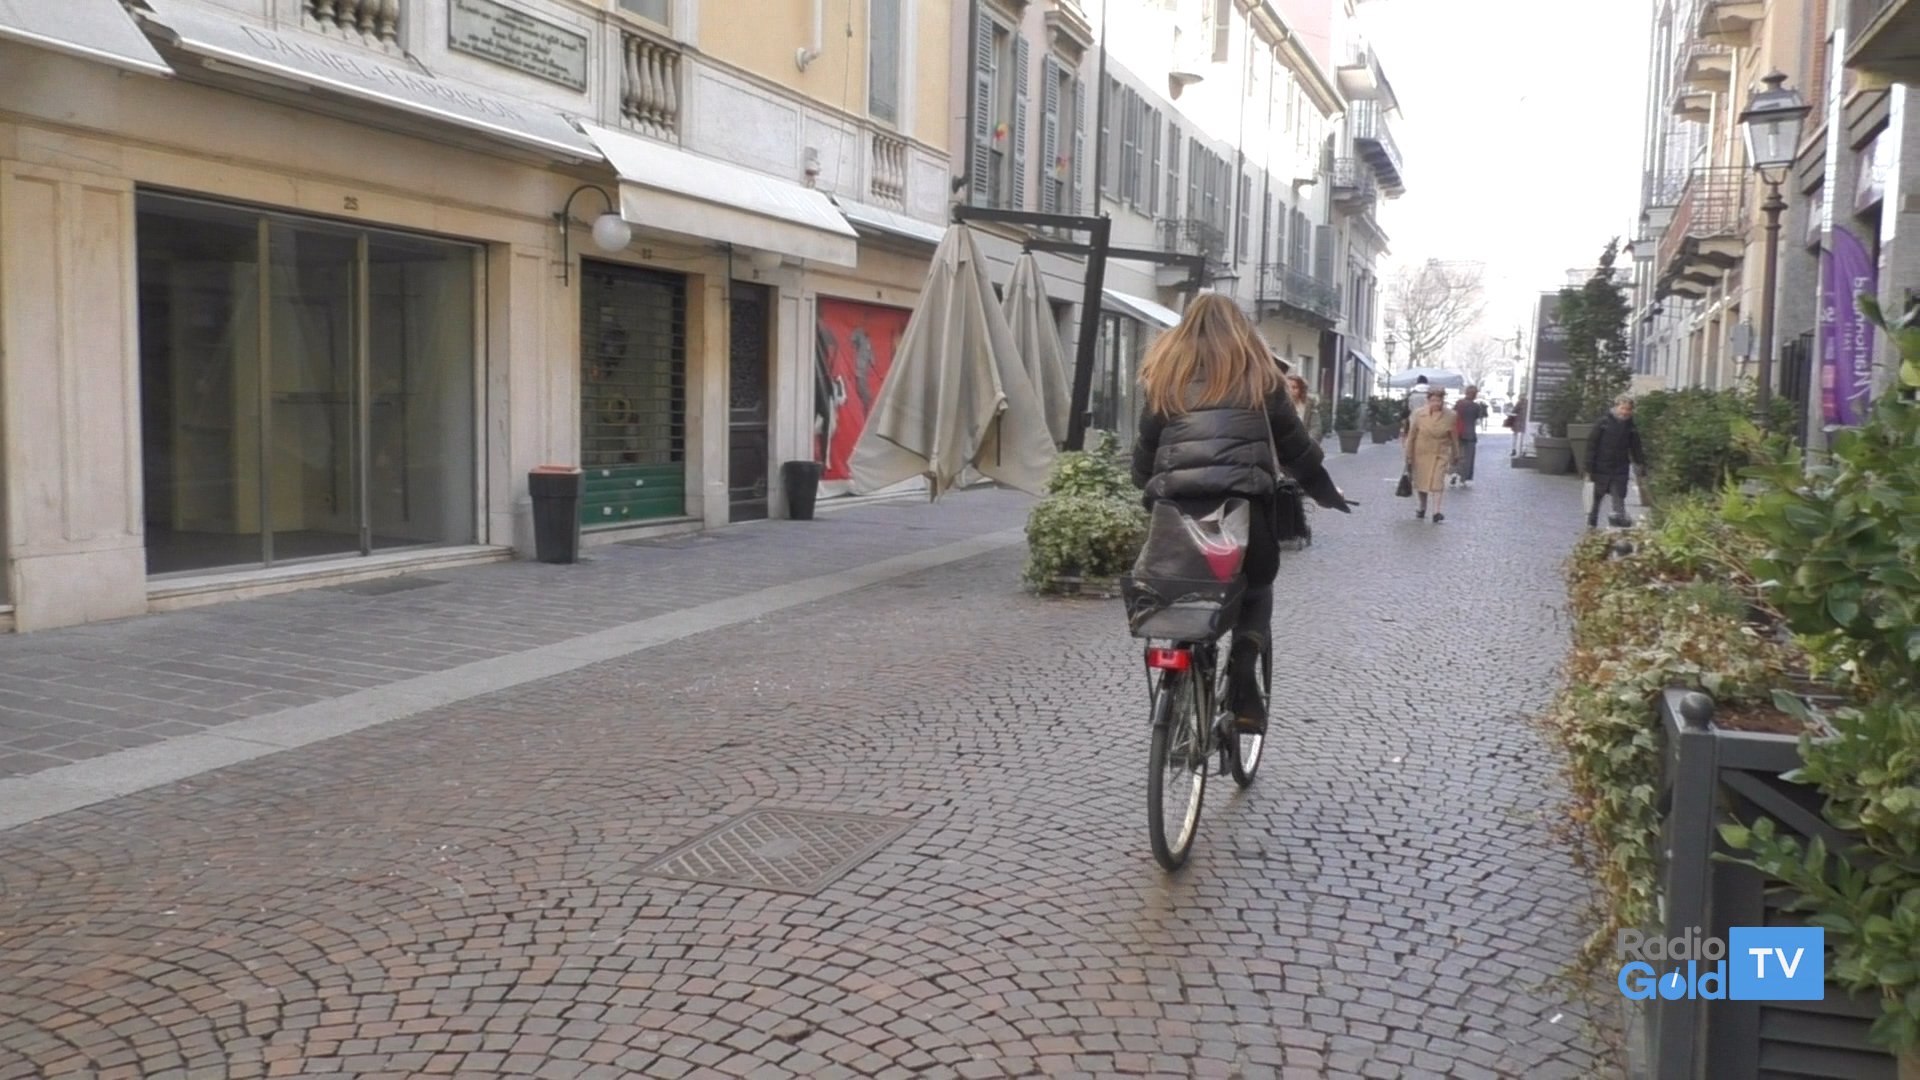 Ztl in centro e più piste ciclabili: Alessandria promuove la bicicletta